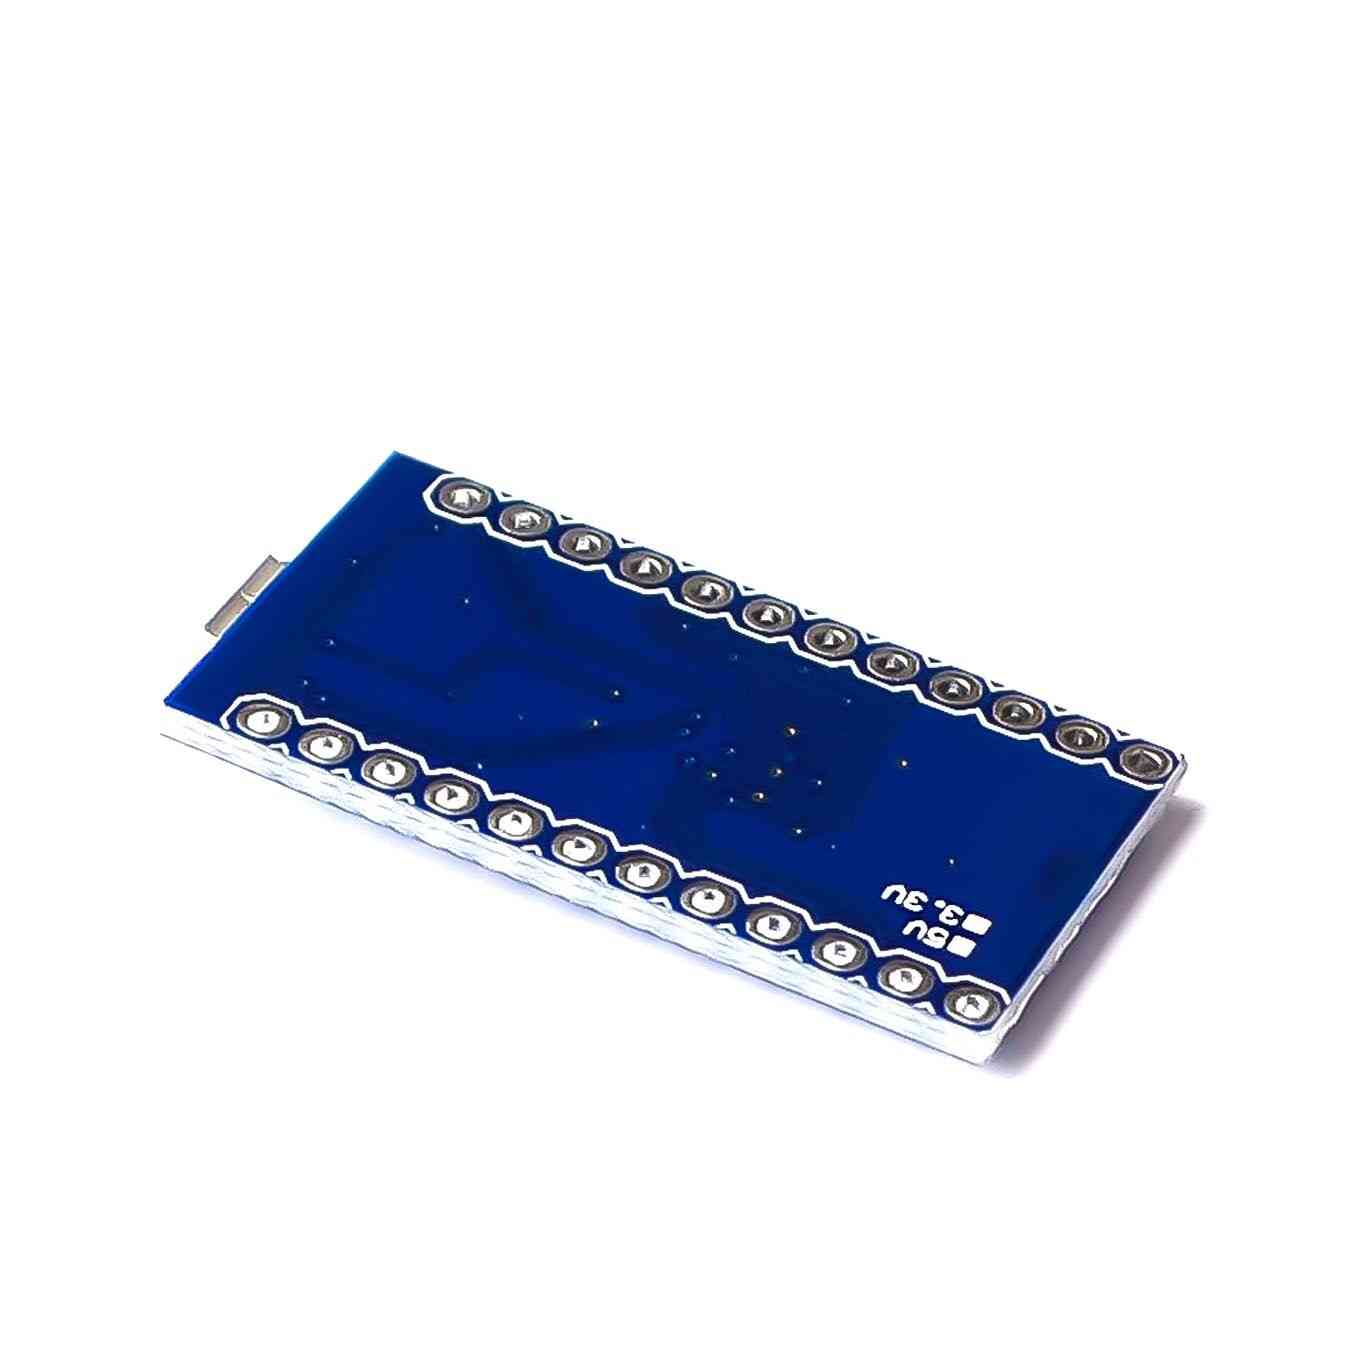 Pro micro za arduino atmega32u4 5v/16mhz modul s pin zaglavljem